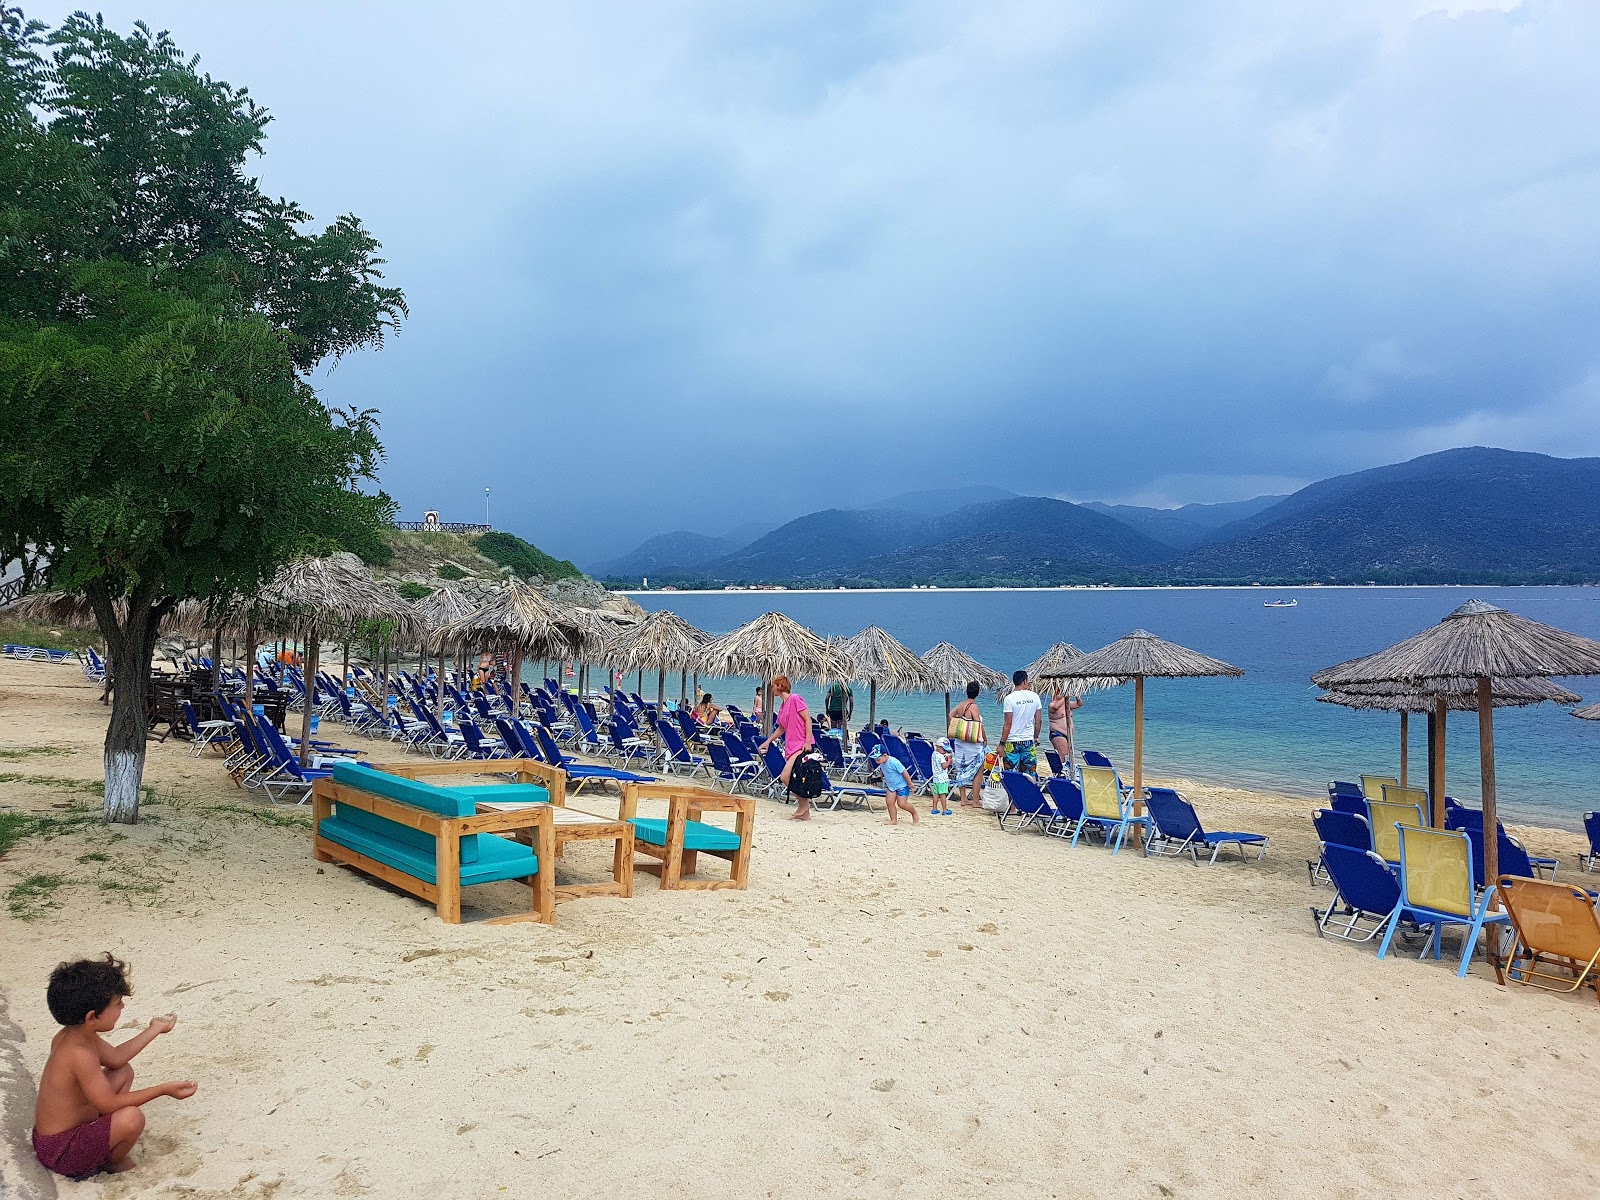 Photo of Tourkolimnionas beach and its beautiful scenery